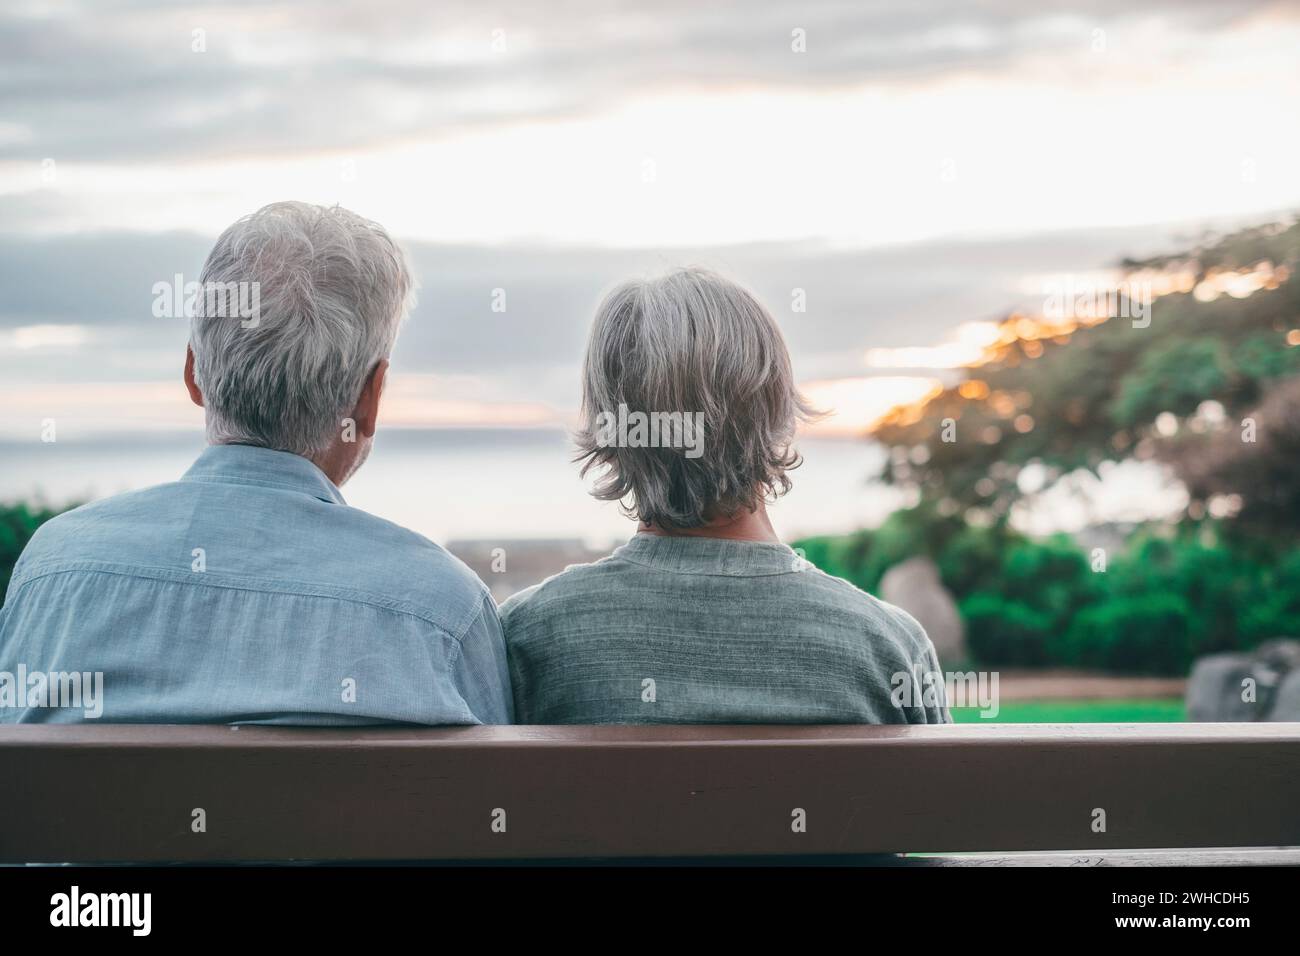 Kopfaufnahme Nahaufnahme Porträt glückliche grauhaarige Frau mittleren Alters mit älterem Ehemann, genießt es, auf einer Bank im Park zu sitzen. Ein liebevolles, altes Familienpaar, das den Sonnenuntergang umschließt. Stockfoto